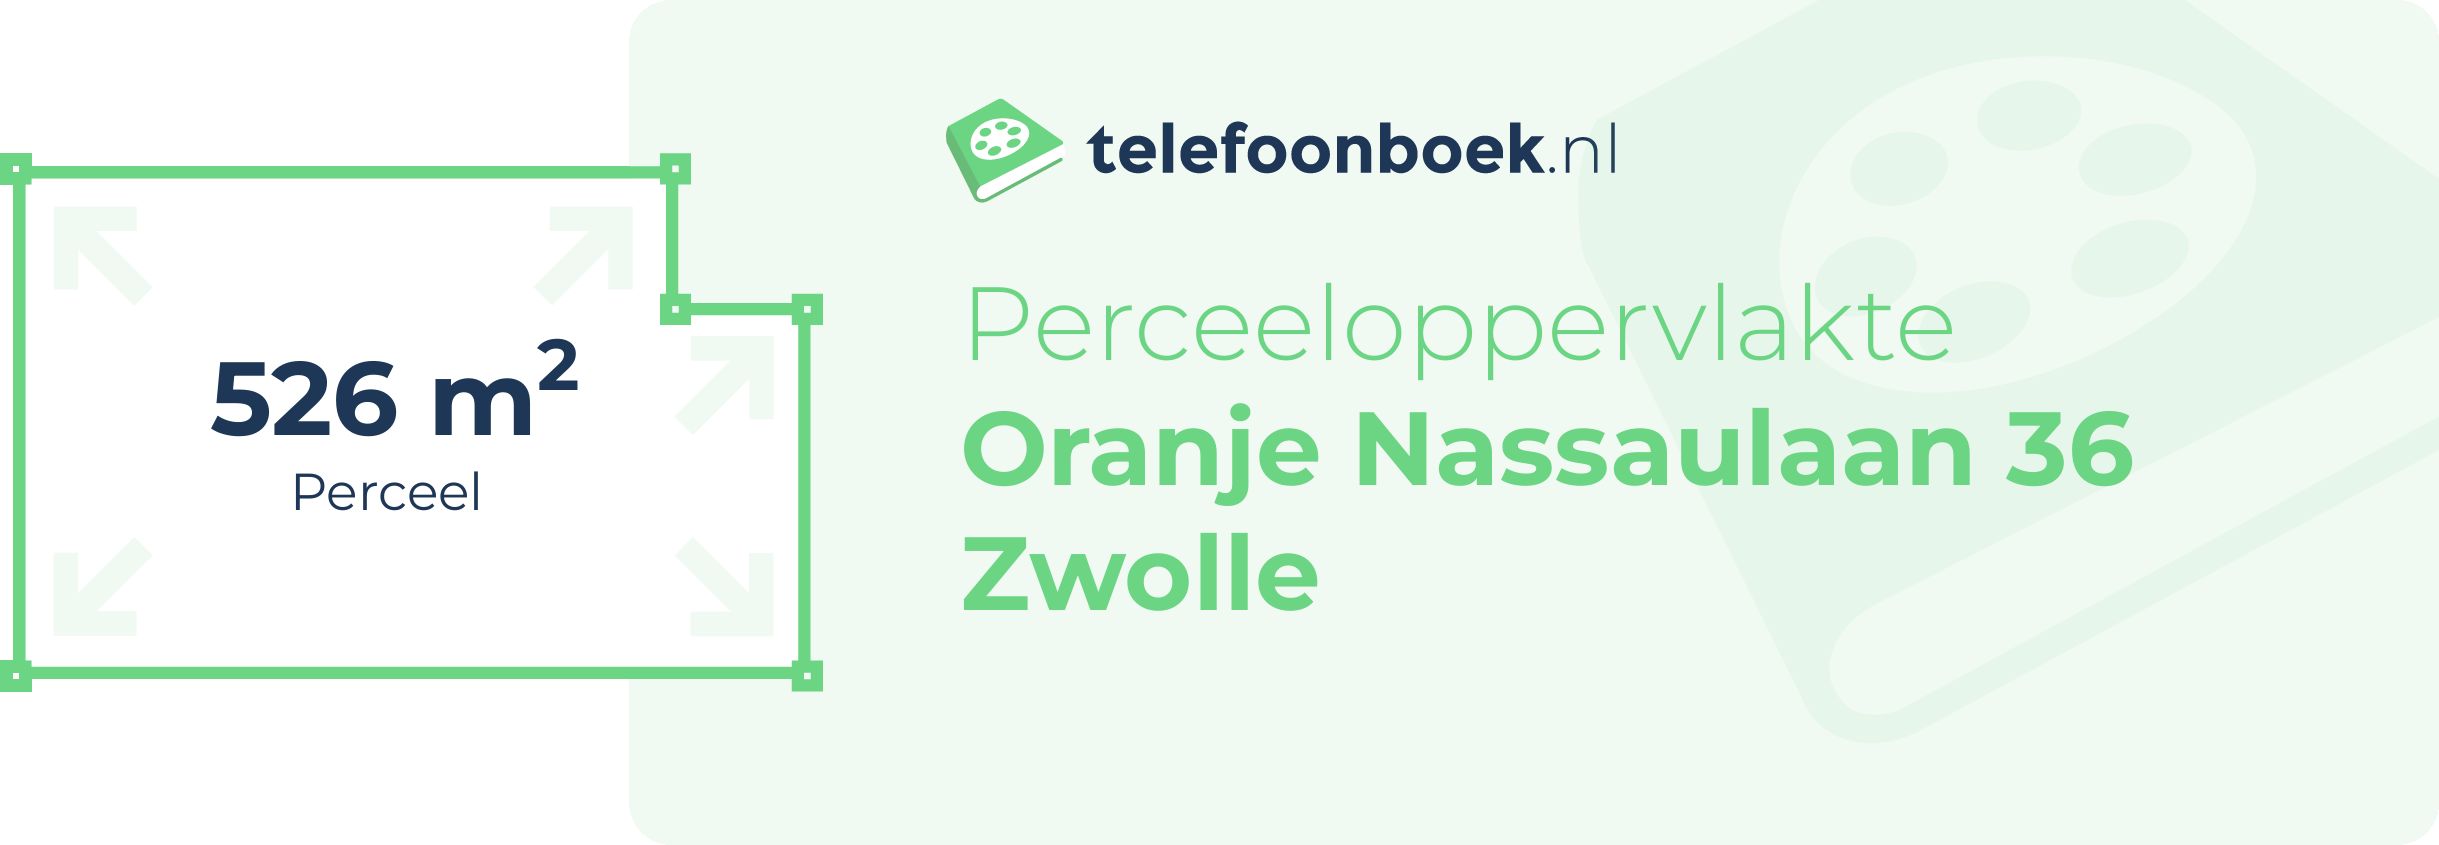 Perceeloppervlakte Oranje Nassaulaan 36 Zwolle